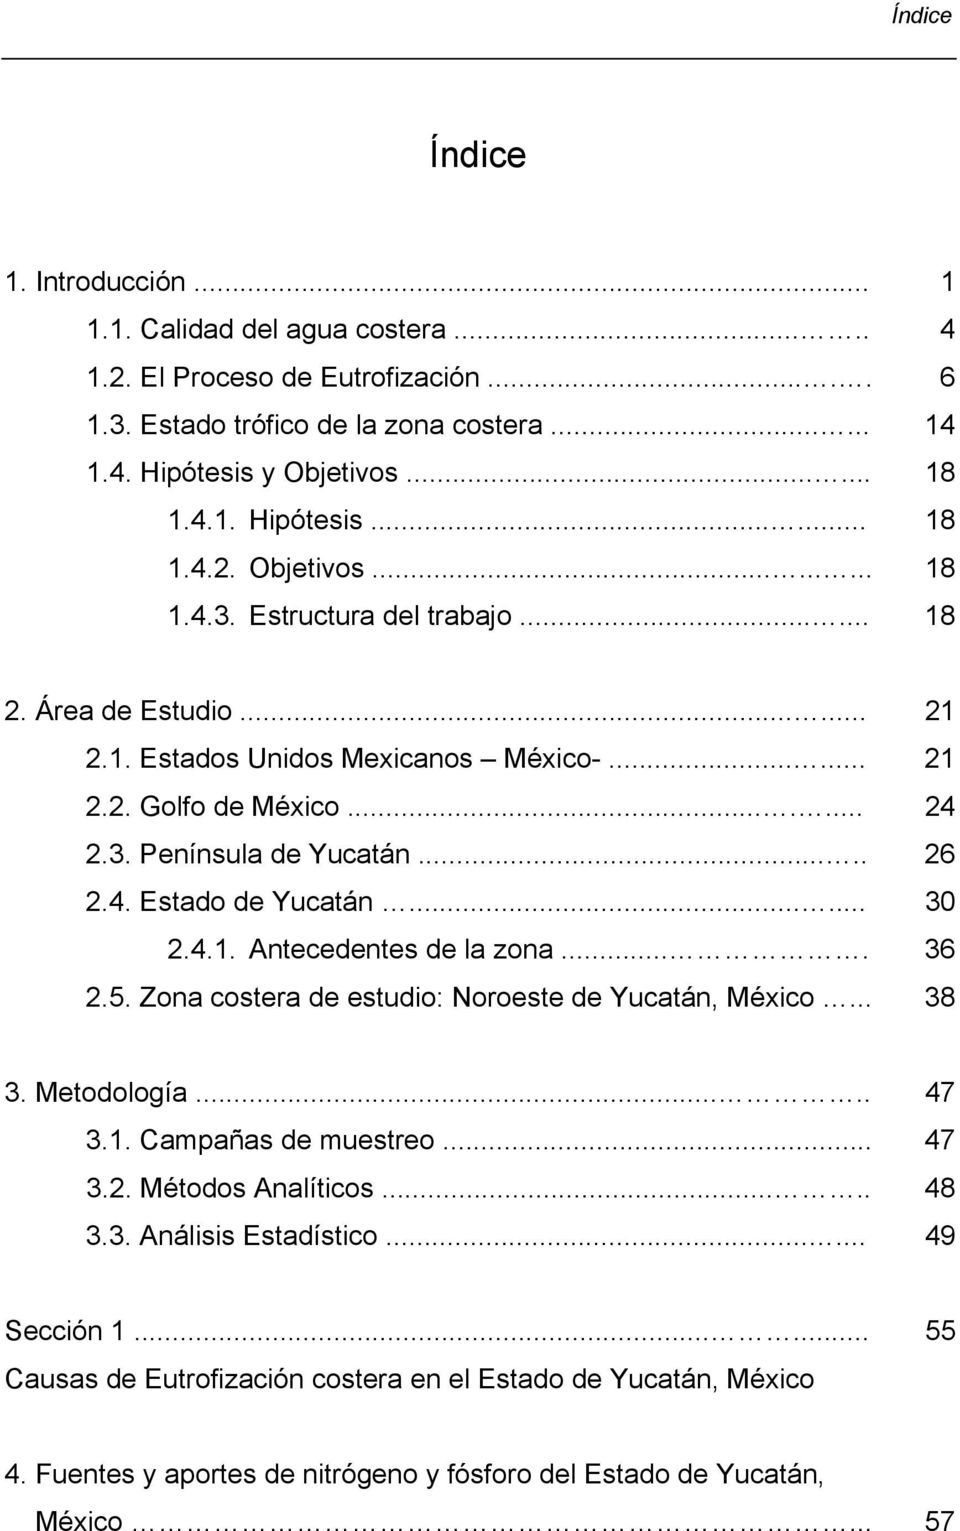 ... 36 2.5. Zona costera de estudio: Noroeste de Yucatán, México... 38 3. Metodología..... 47 3.1. Campañas de muestreo... 47 3.2. Métodos Analíticos..... 48 3.3. Análisis Estadístico...... 49 Sección 1.